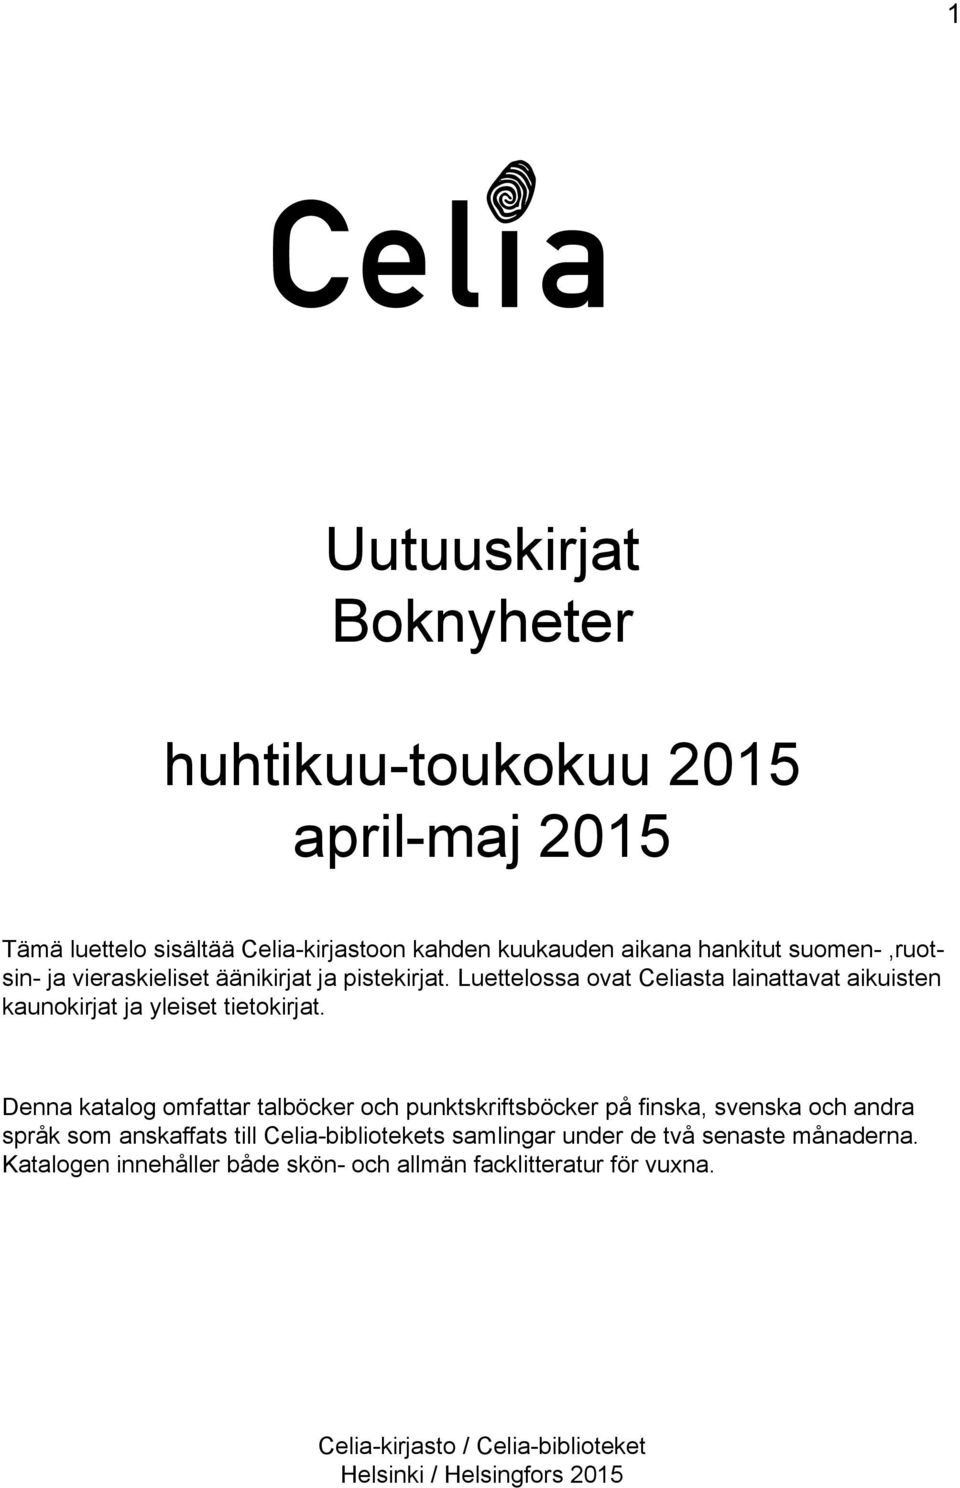 Denna katalog omfattar talböcker och punktskriftsböcker på finska, svenska och andra språk som anskaffats till Celia-bibliotekets samlingar under